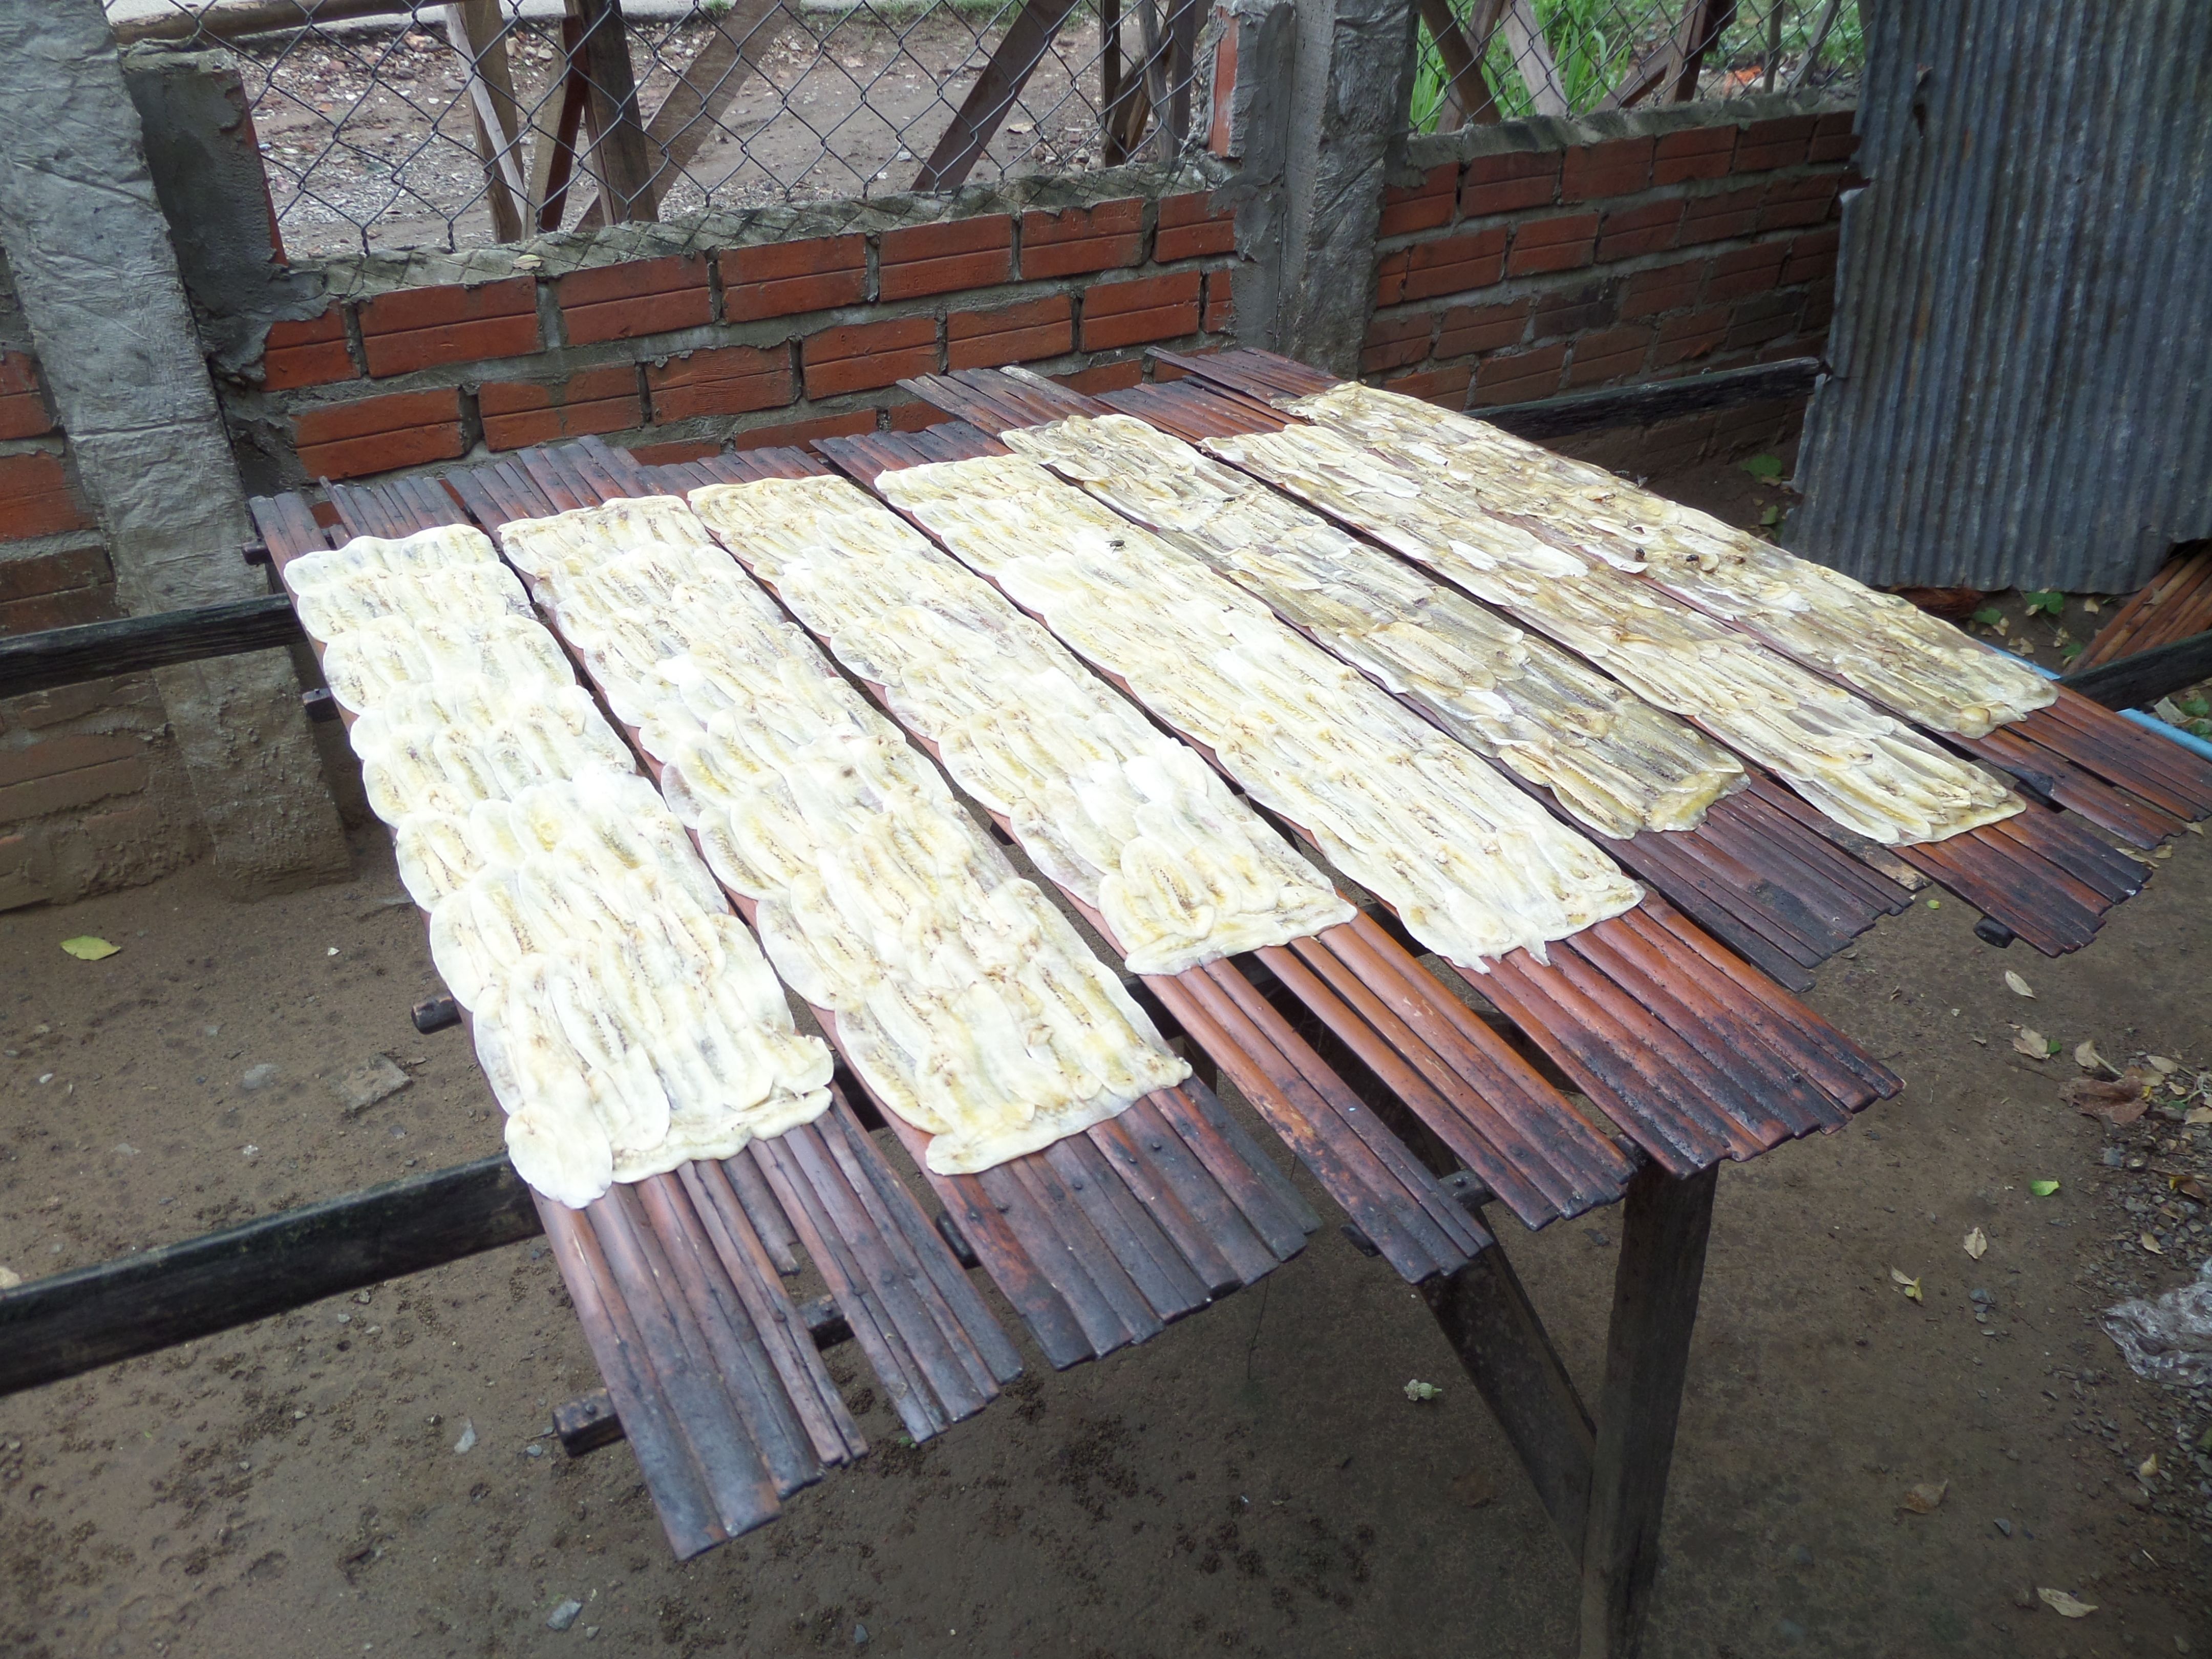 Making dried bananas, Battambang Cambodia